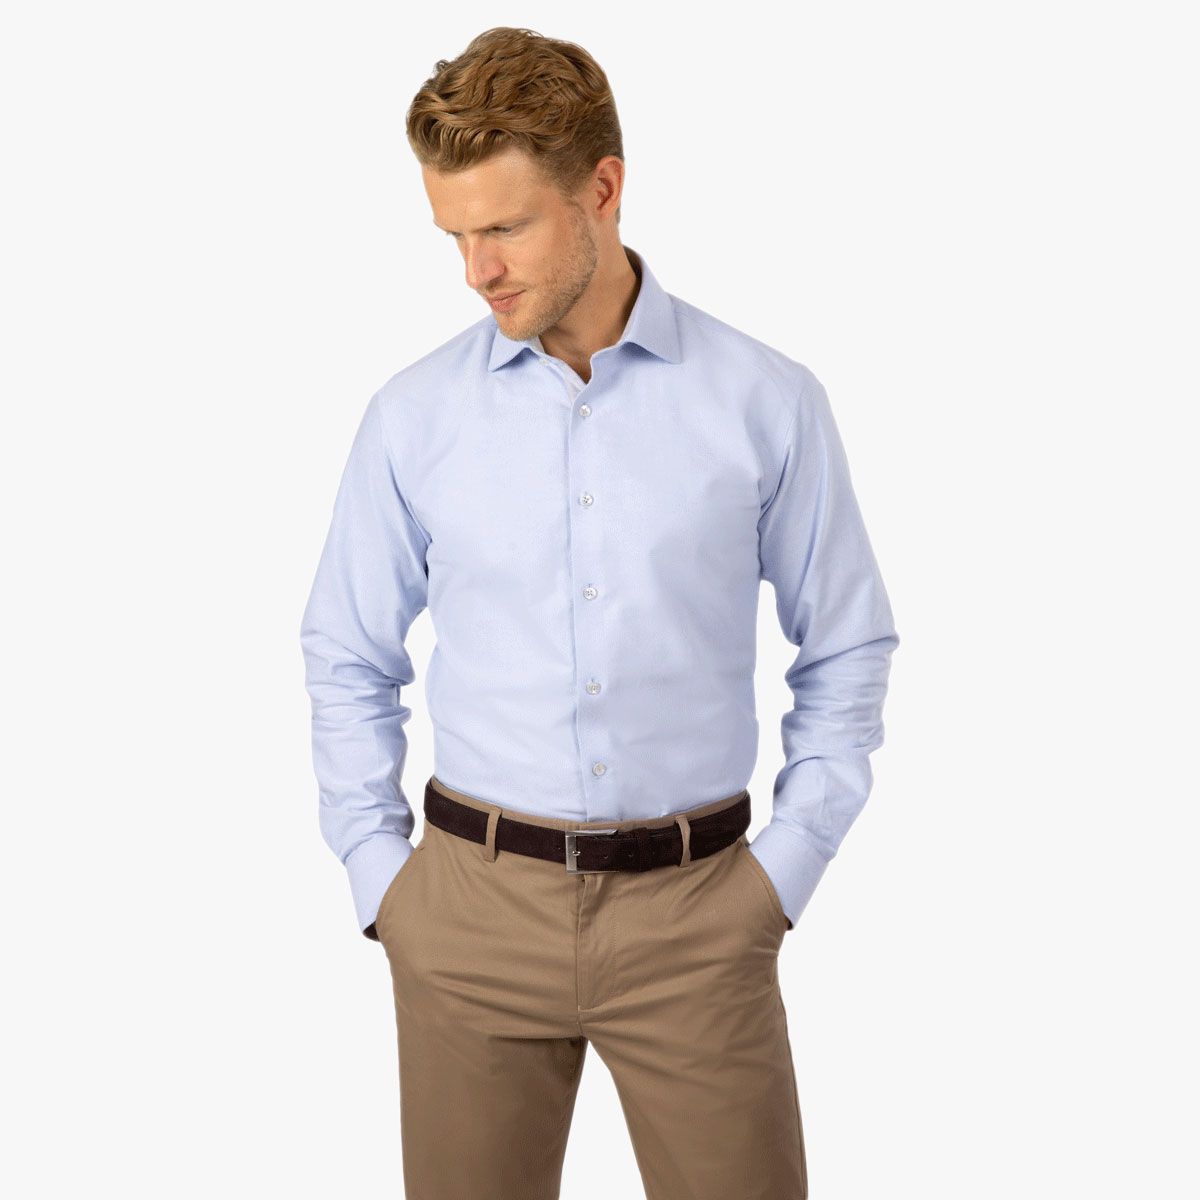 Modern Fit Hemd in hellblau mit grauen Details